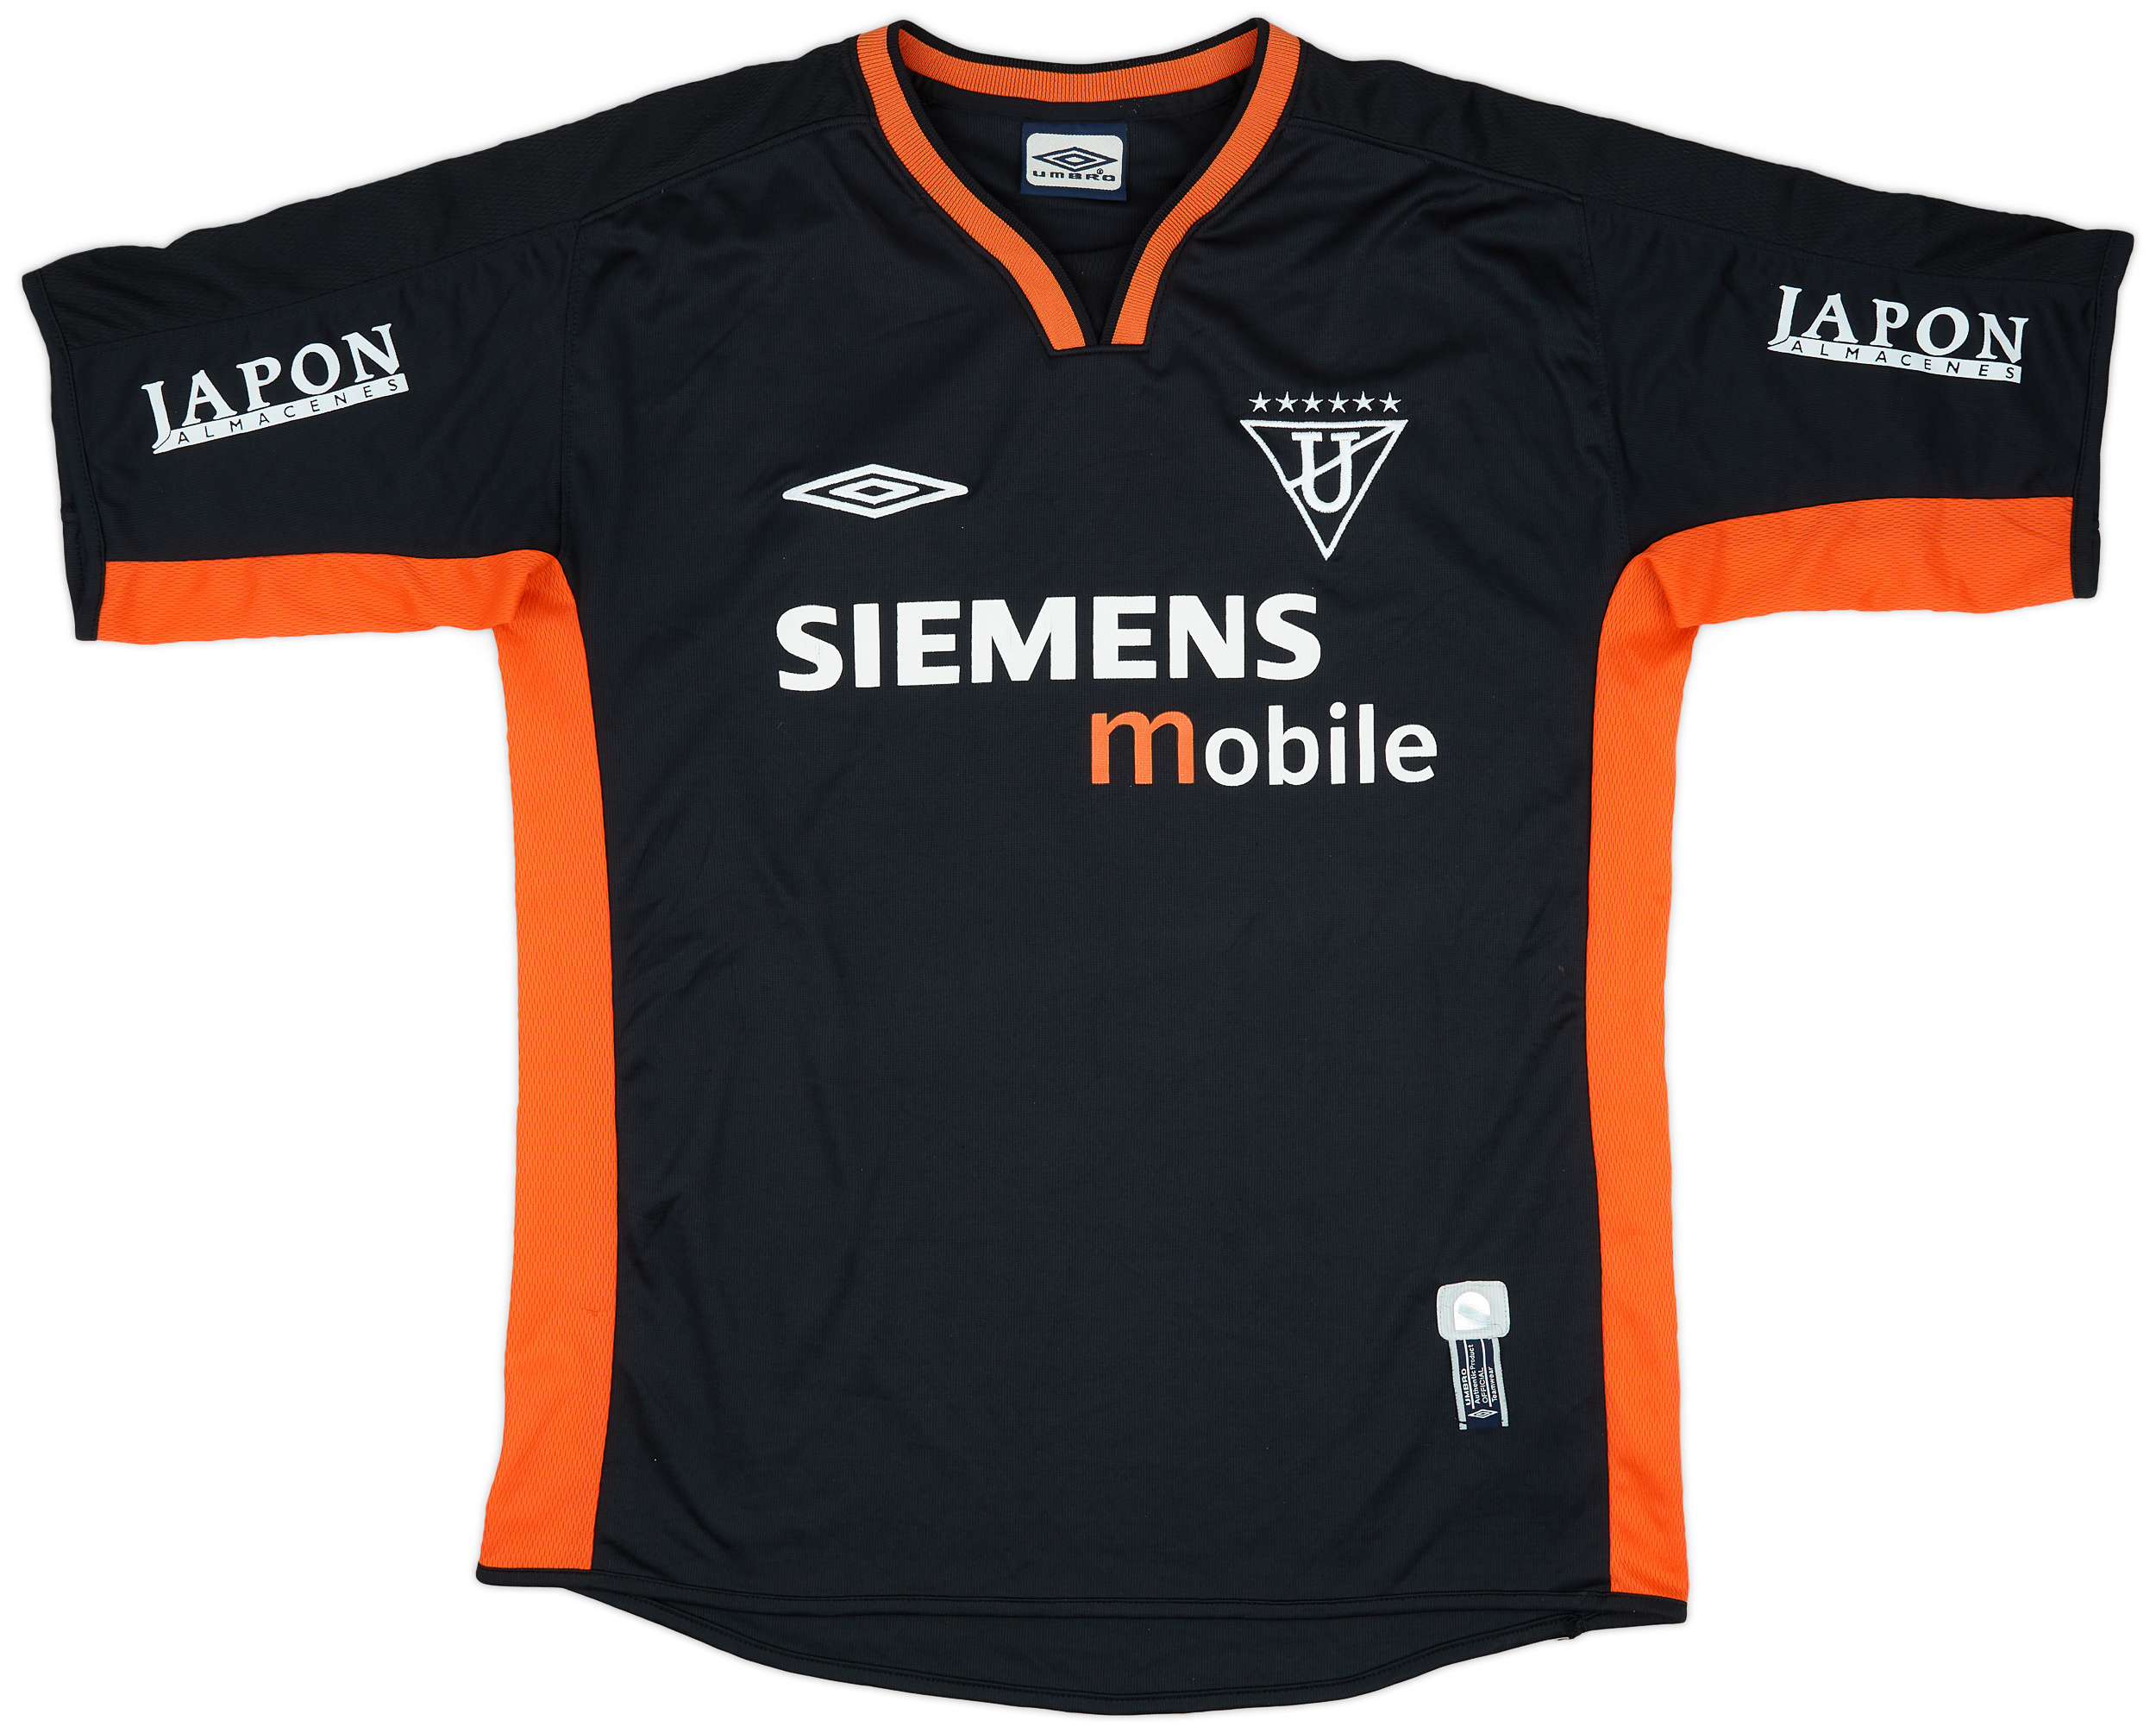 2003-04 LDU Quito Third Shirt - 8/10 - ()